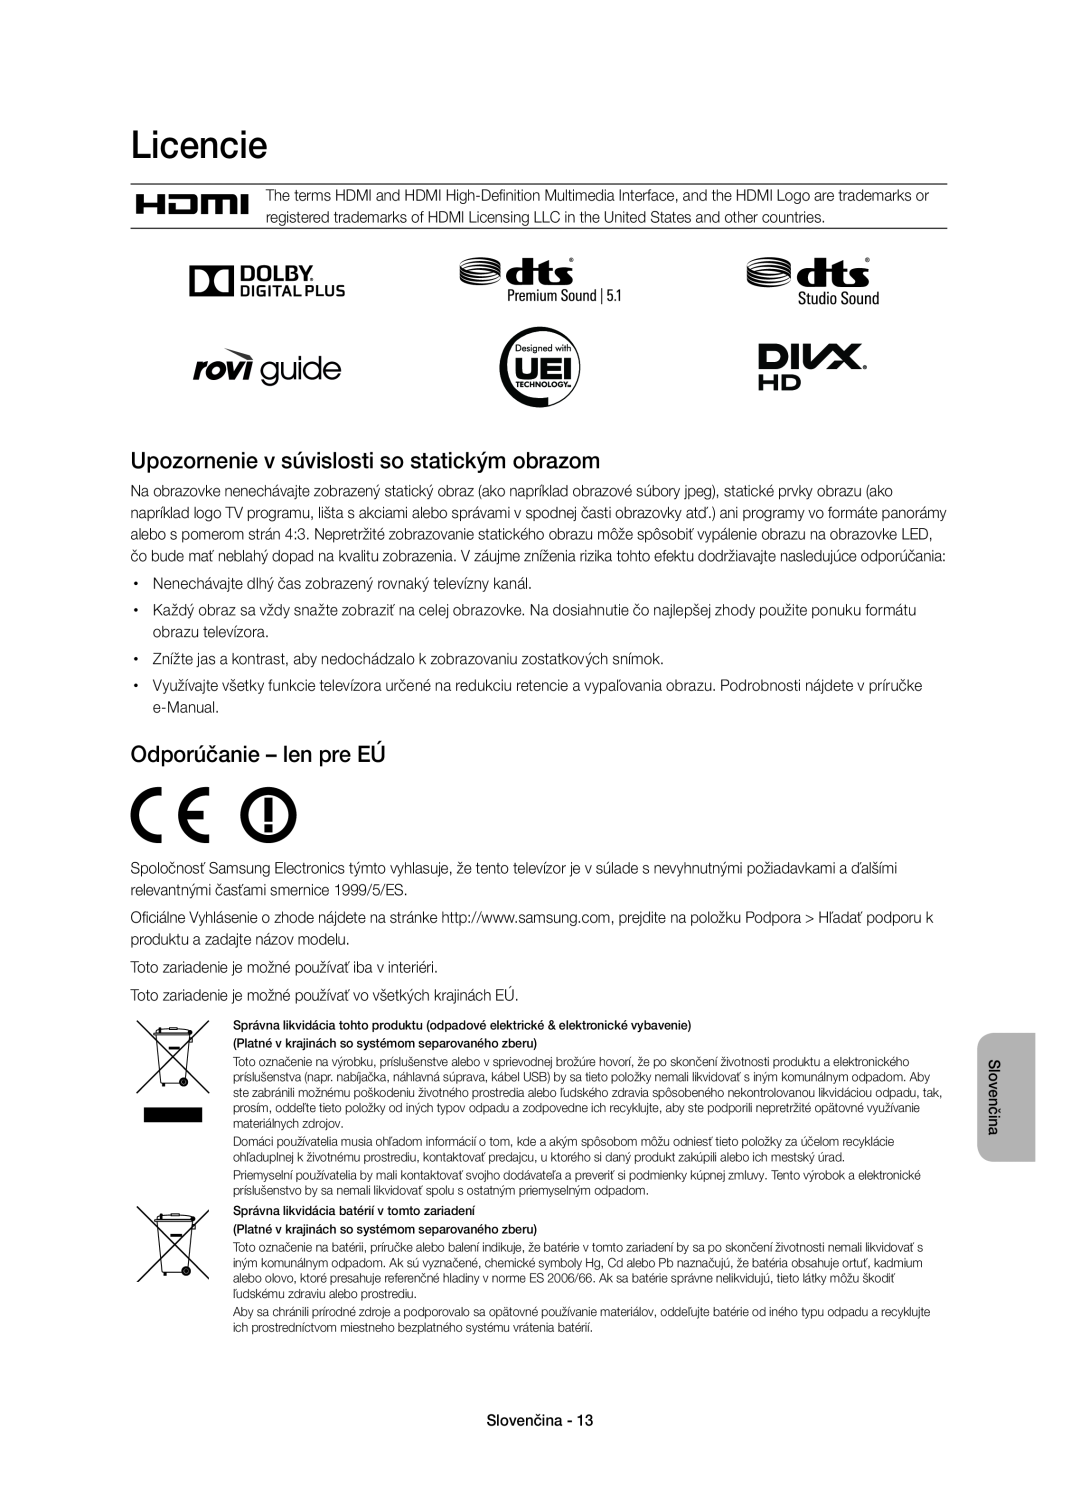 Samsung UE55H6410SSXXC manual Licencie, Upozornenie v súvislosti so statickým obrazom, Odporúčanie - len pre EÚ, Slovenčina 